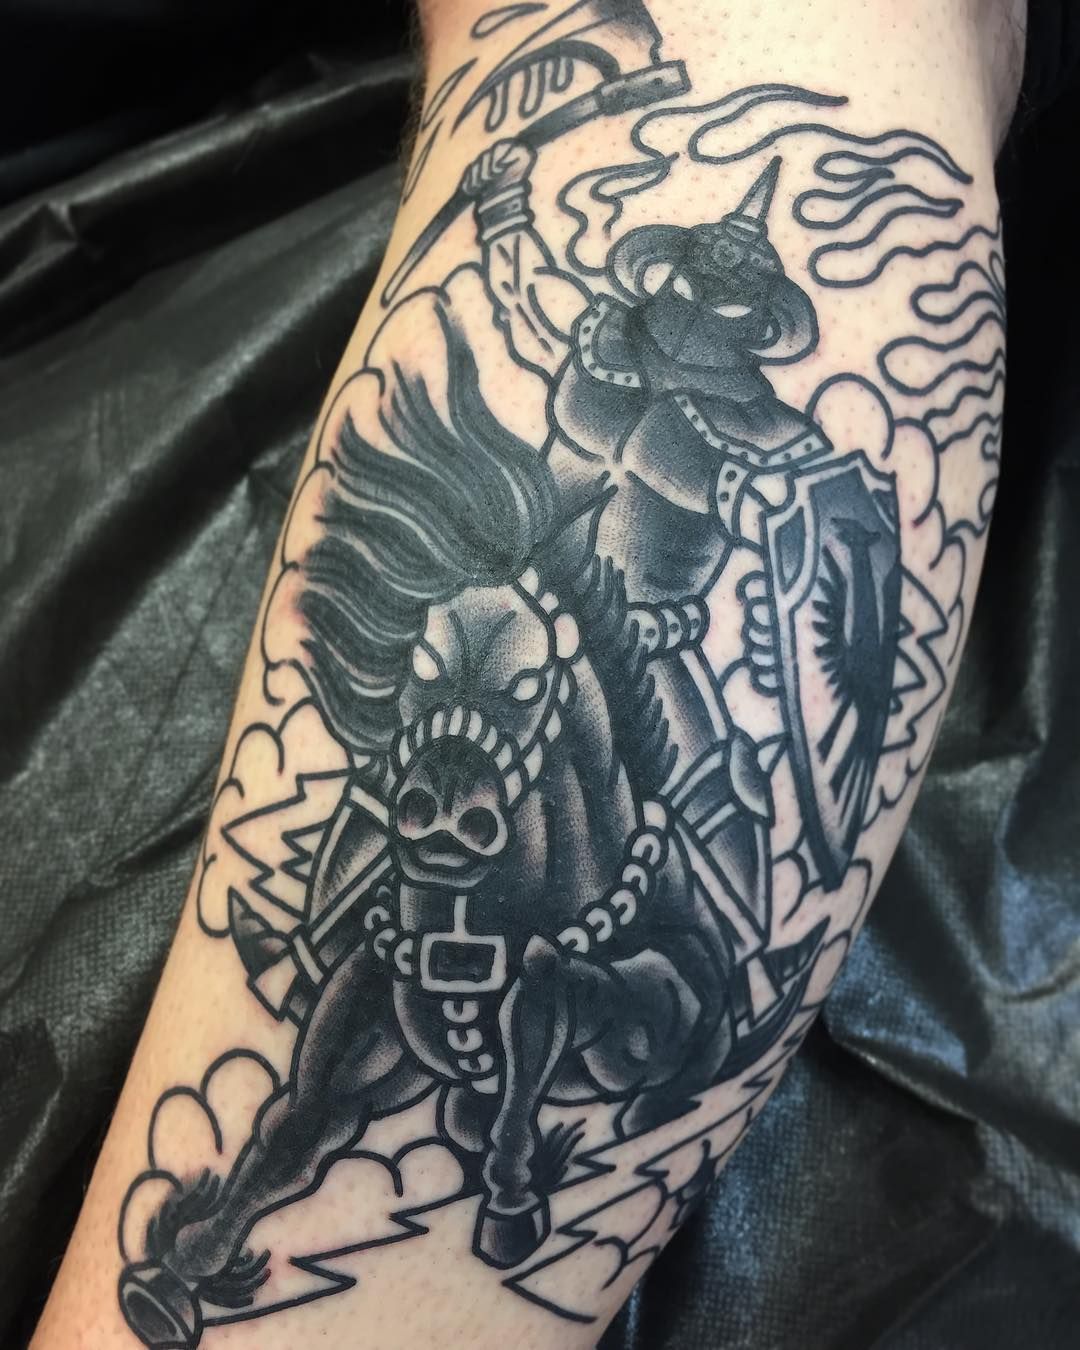 Knight helmet tattoo on the arm  Tattoogridnet